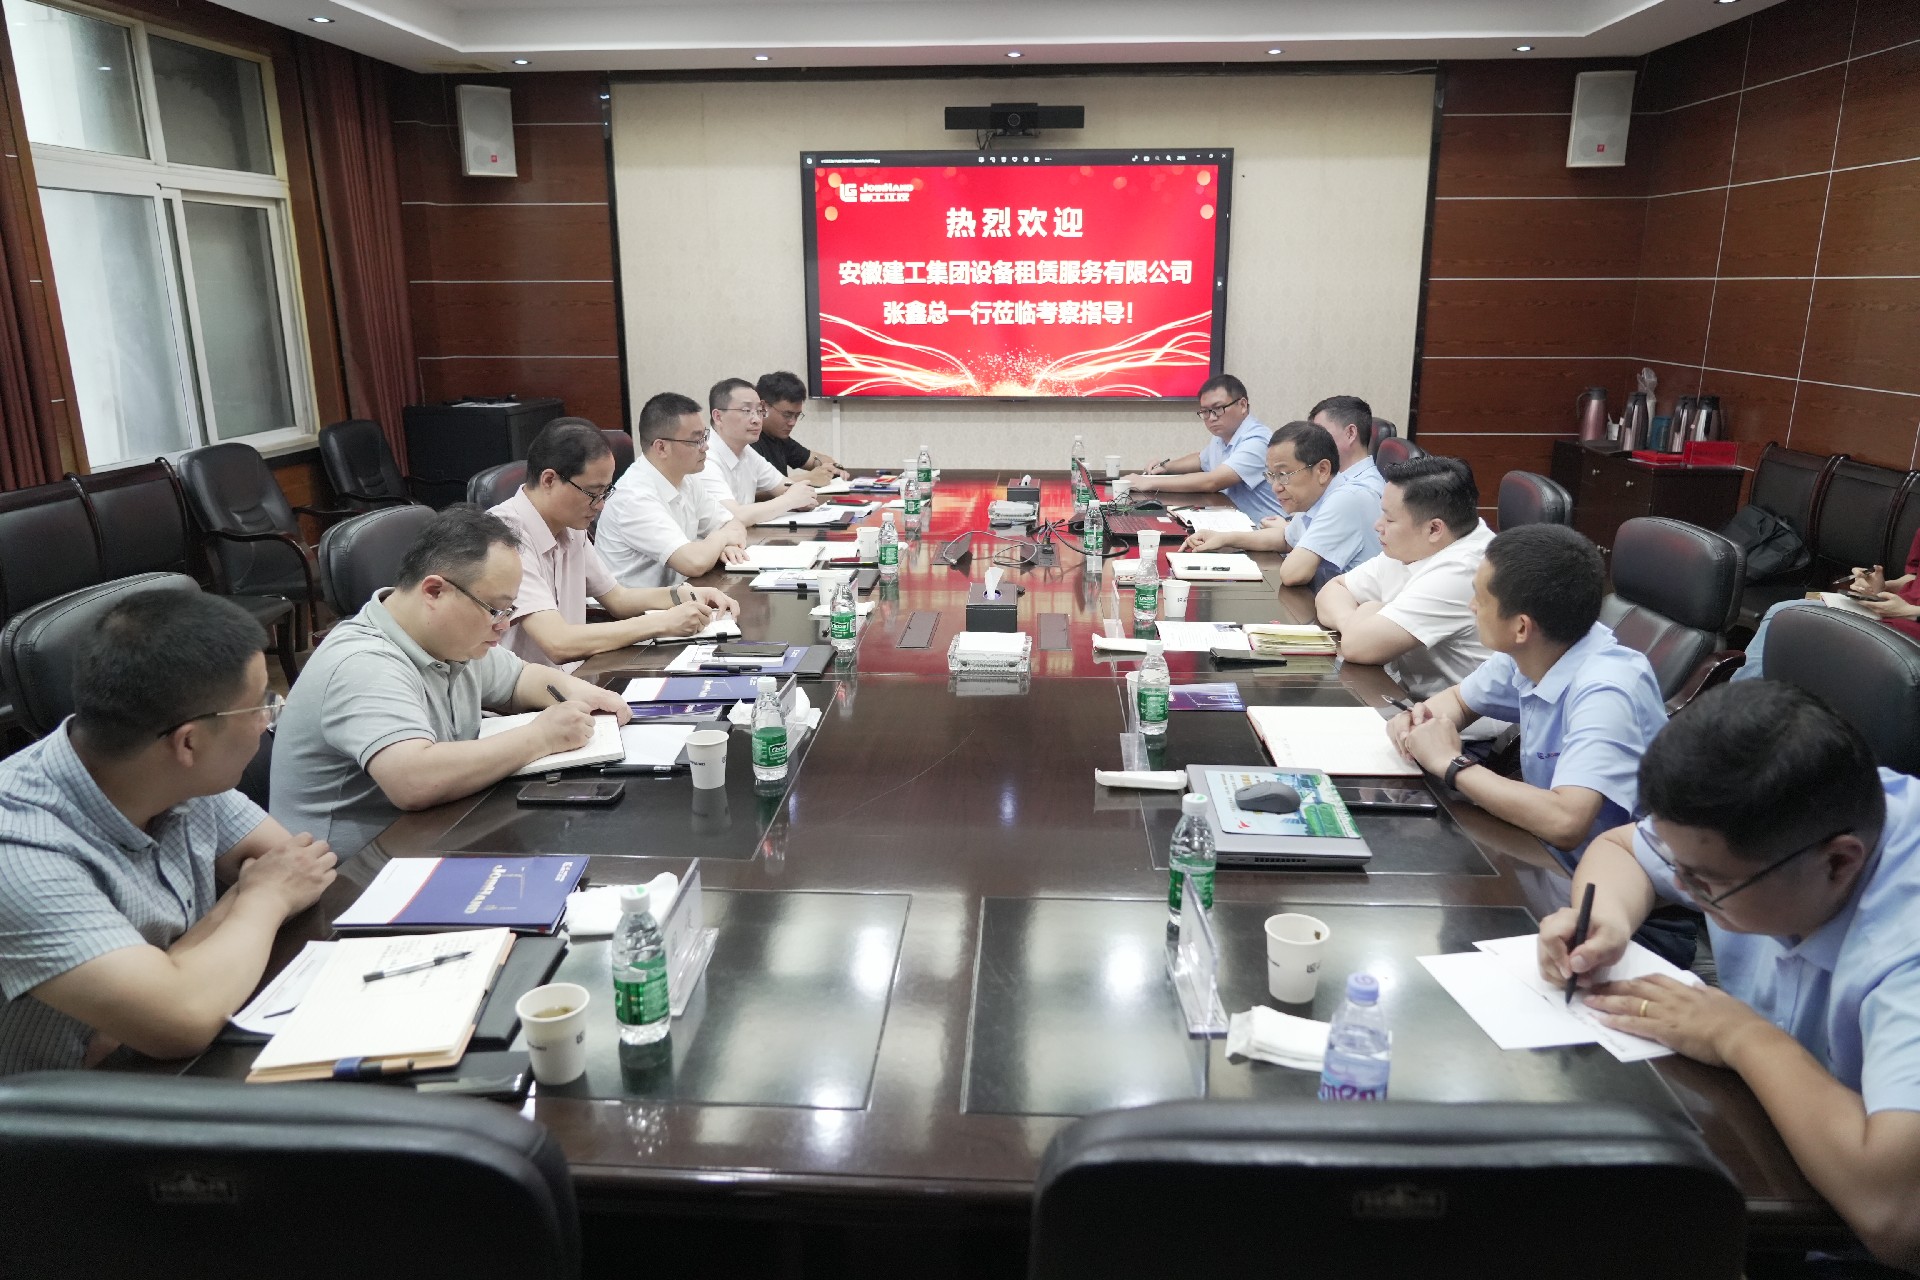 安徽建工设备租赁与柳工江汉签署战略合作协议